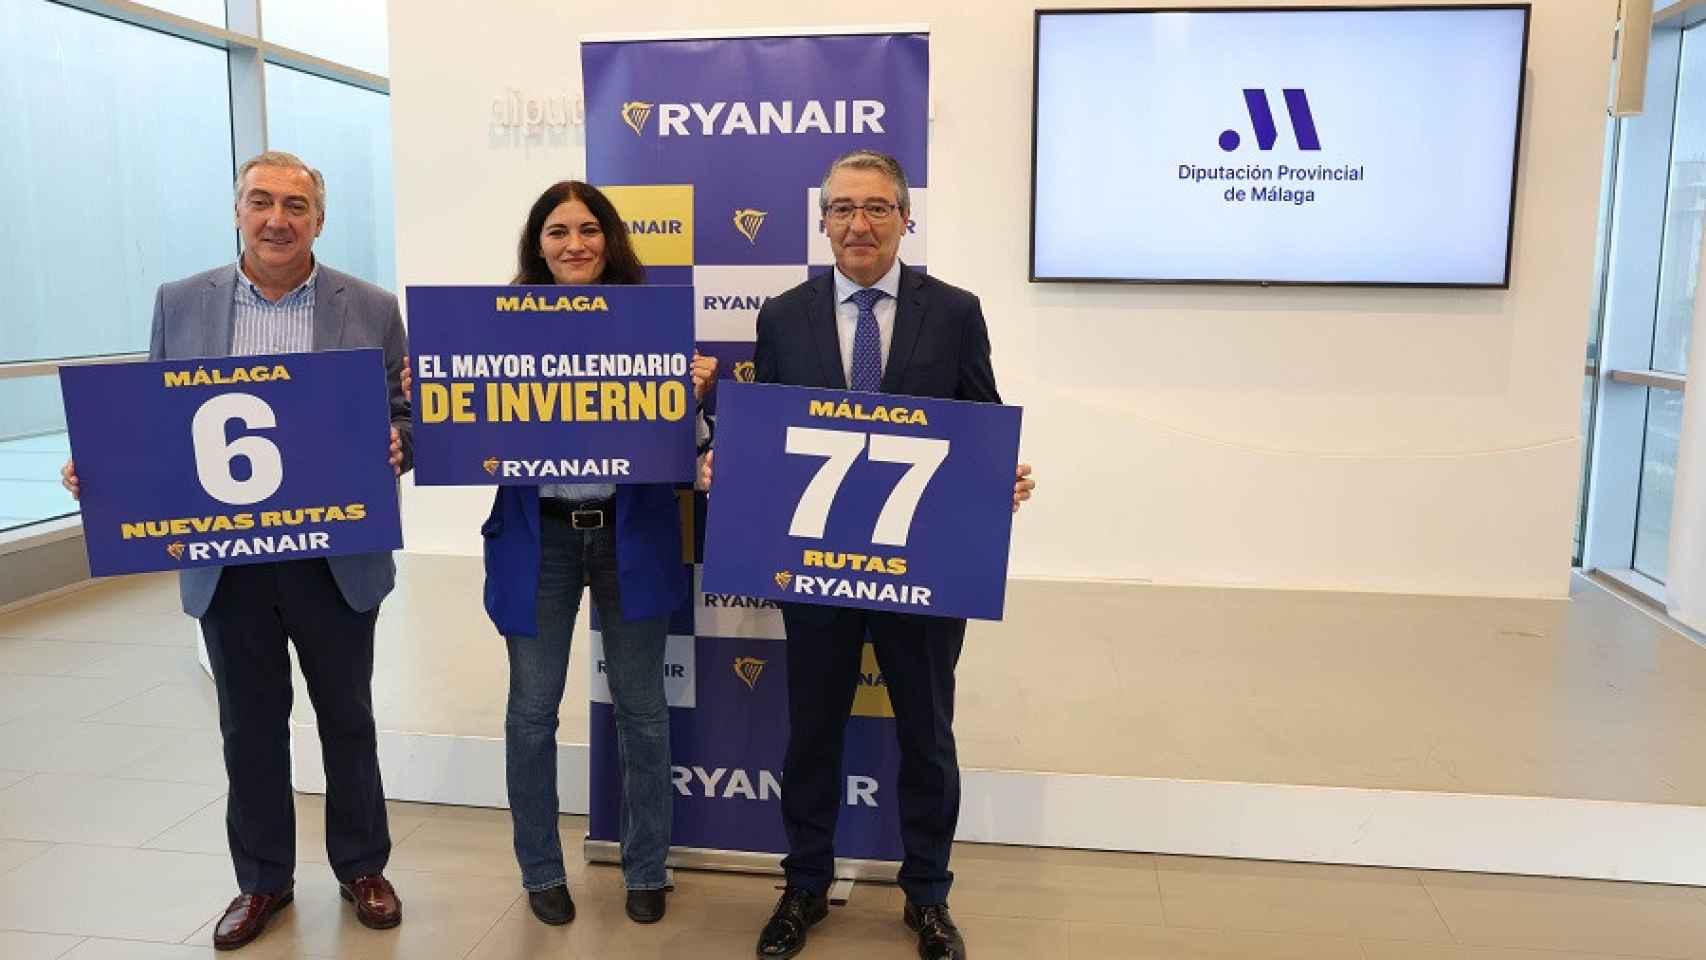 Antonio Díaz, Elena Cabrera y Francisco Salado en la presentación de la temporada de invierno de Ryanair en Málaga.